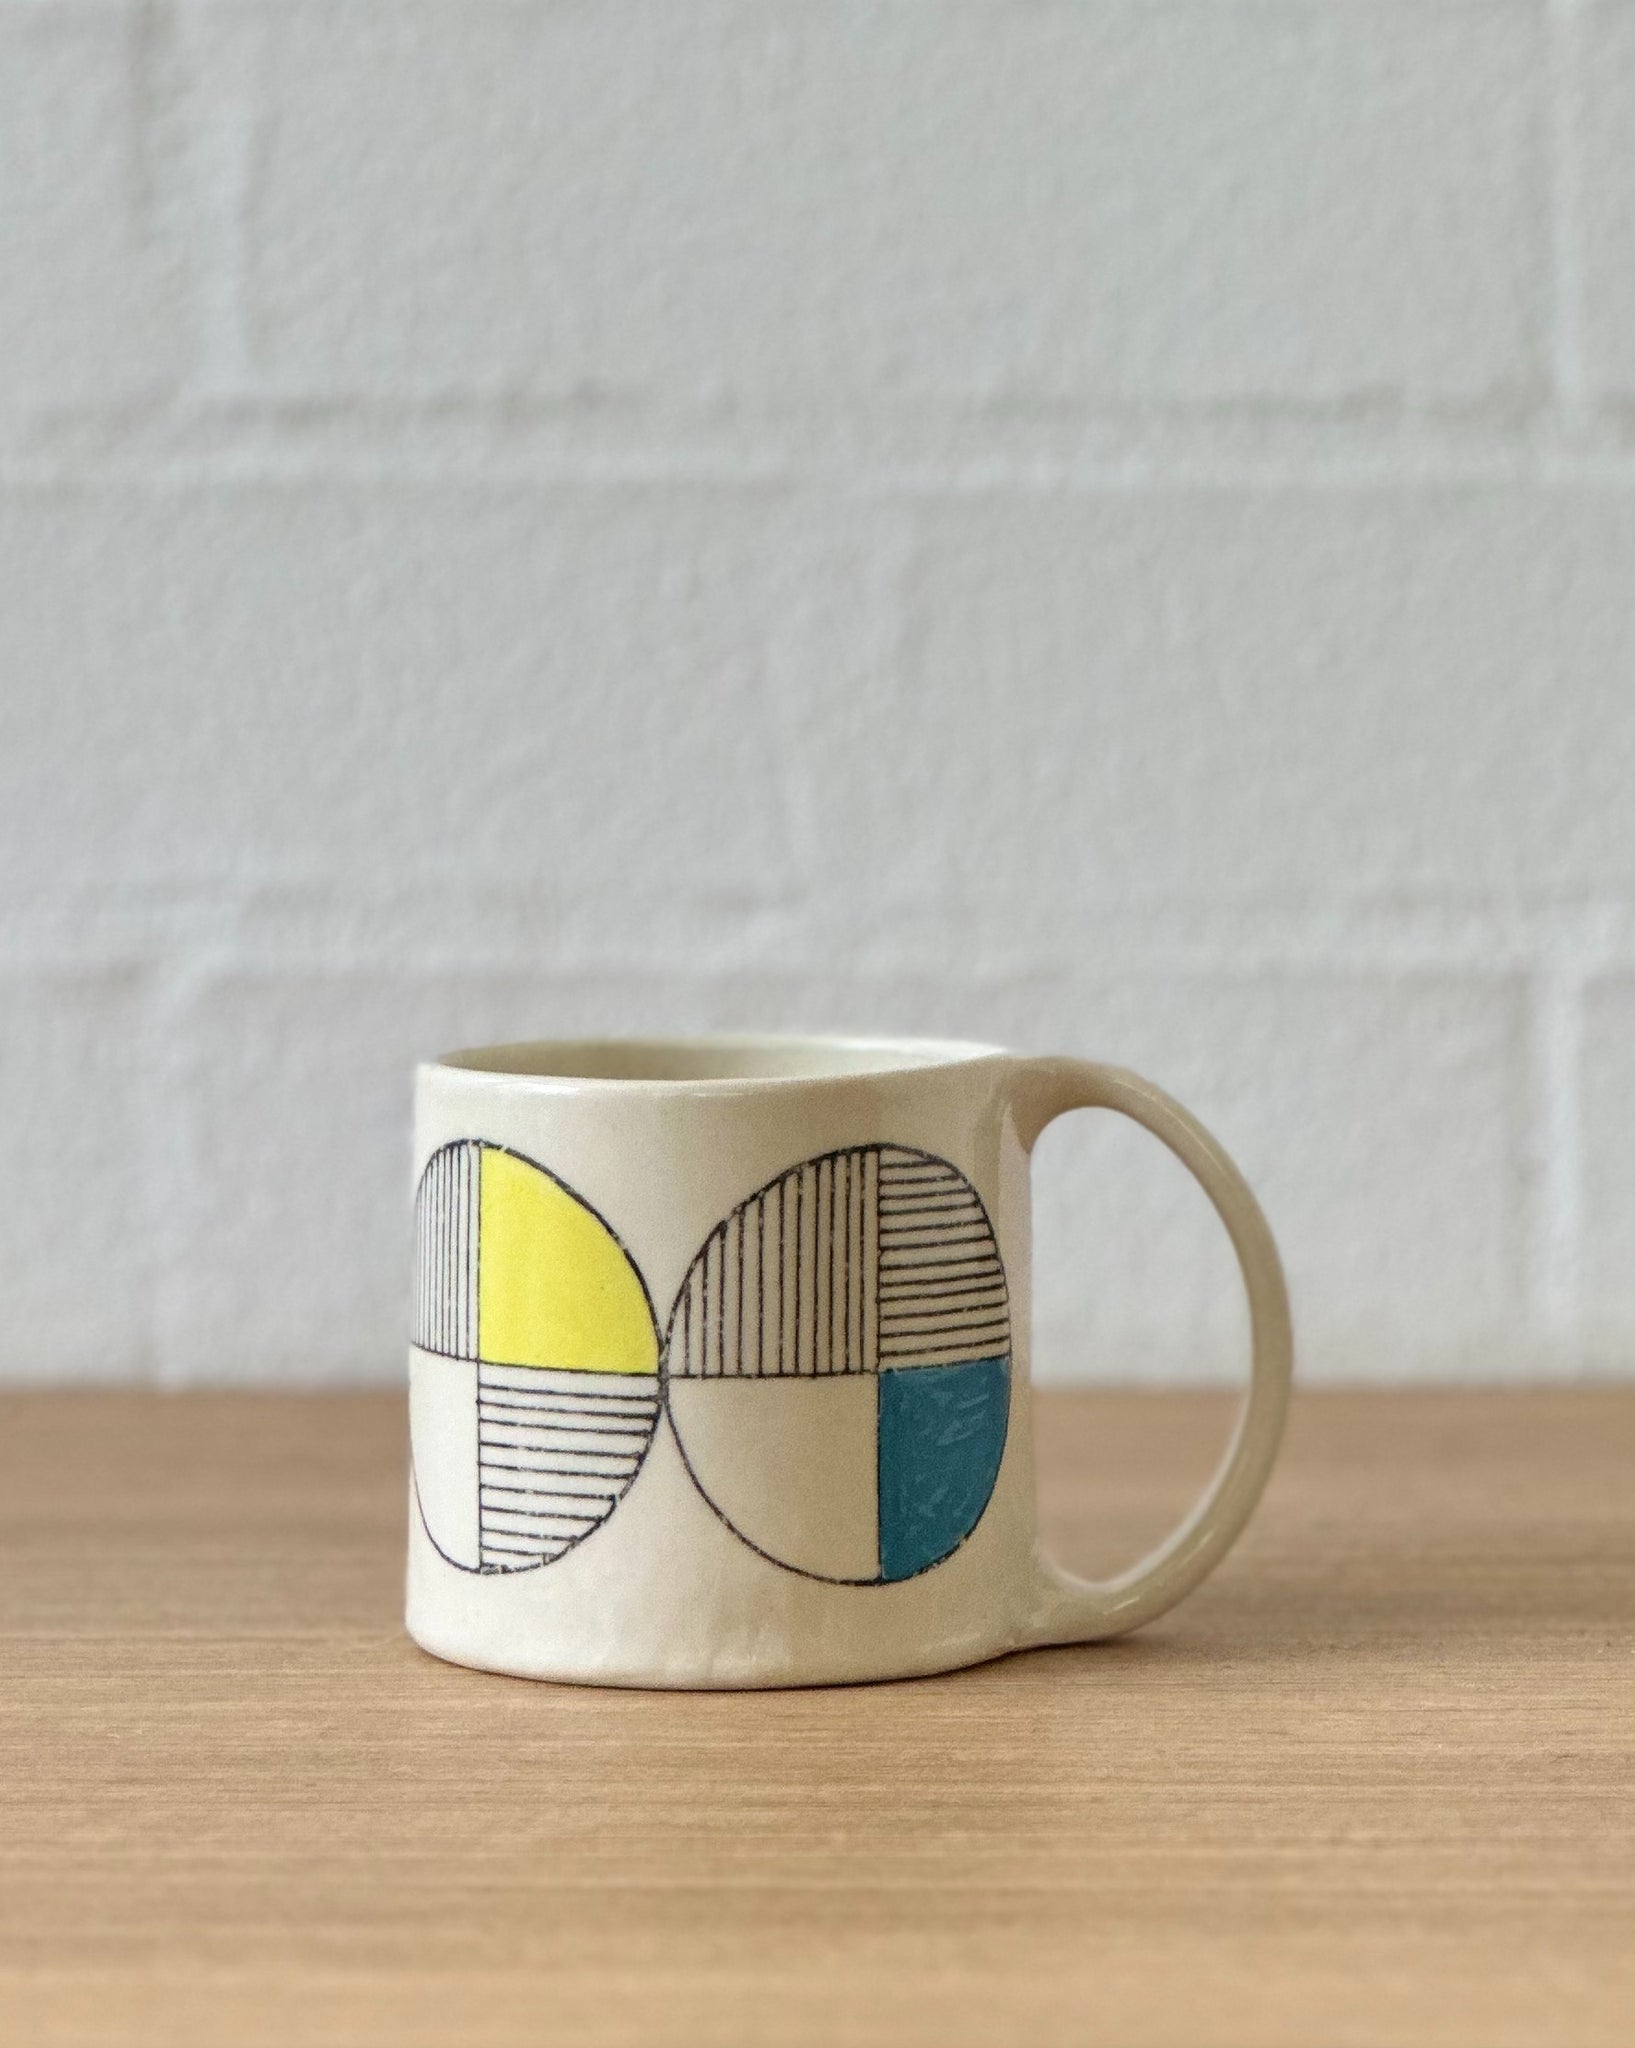 circle work mug (orange, yellow and blue) - regular